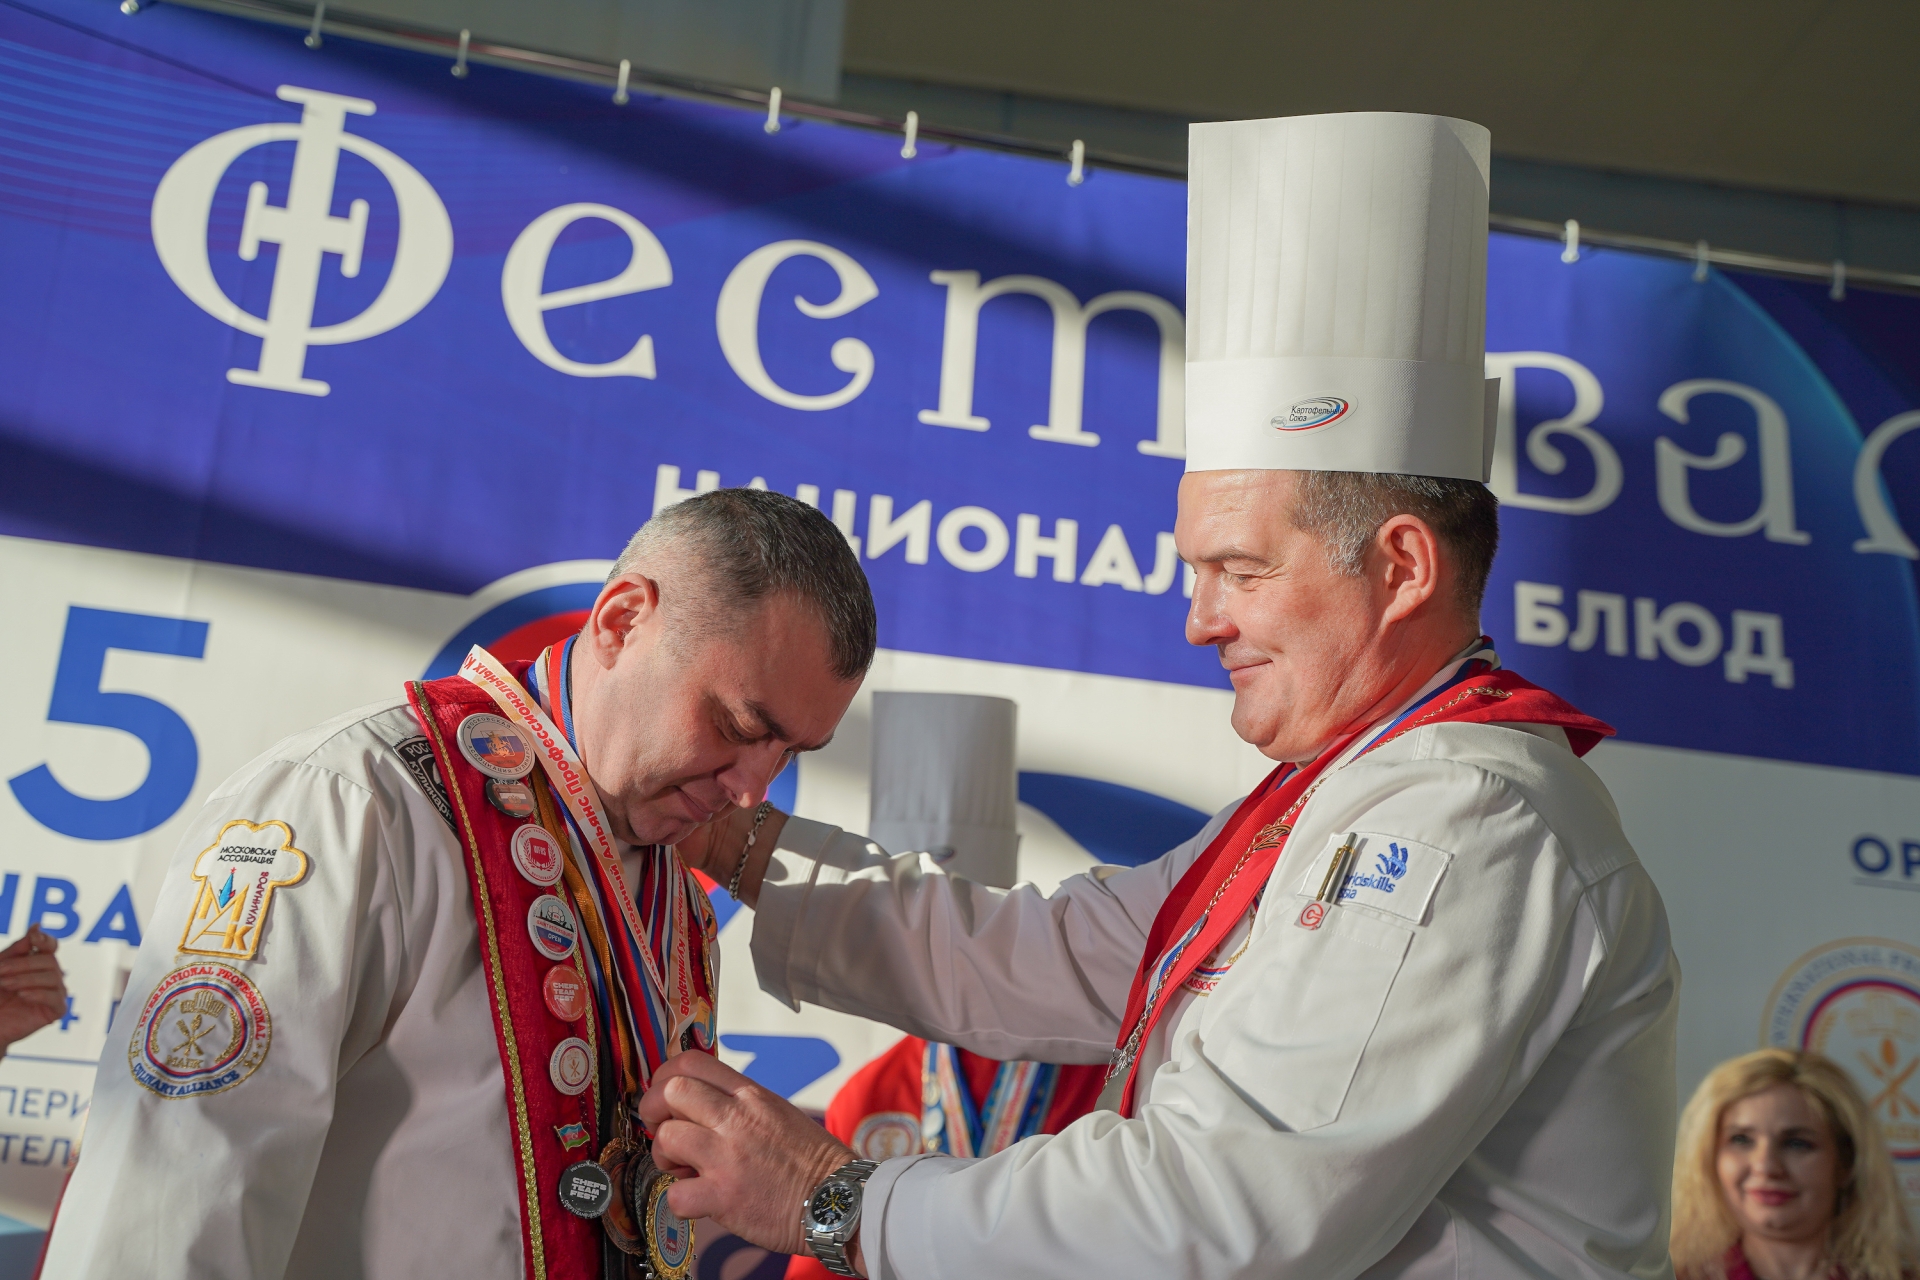 Афиша мероприятия 5 января состоялся Фестиваль национальных блюд в парк-отеле "Империал"